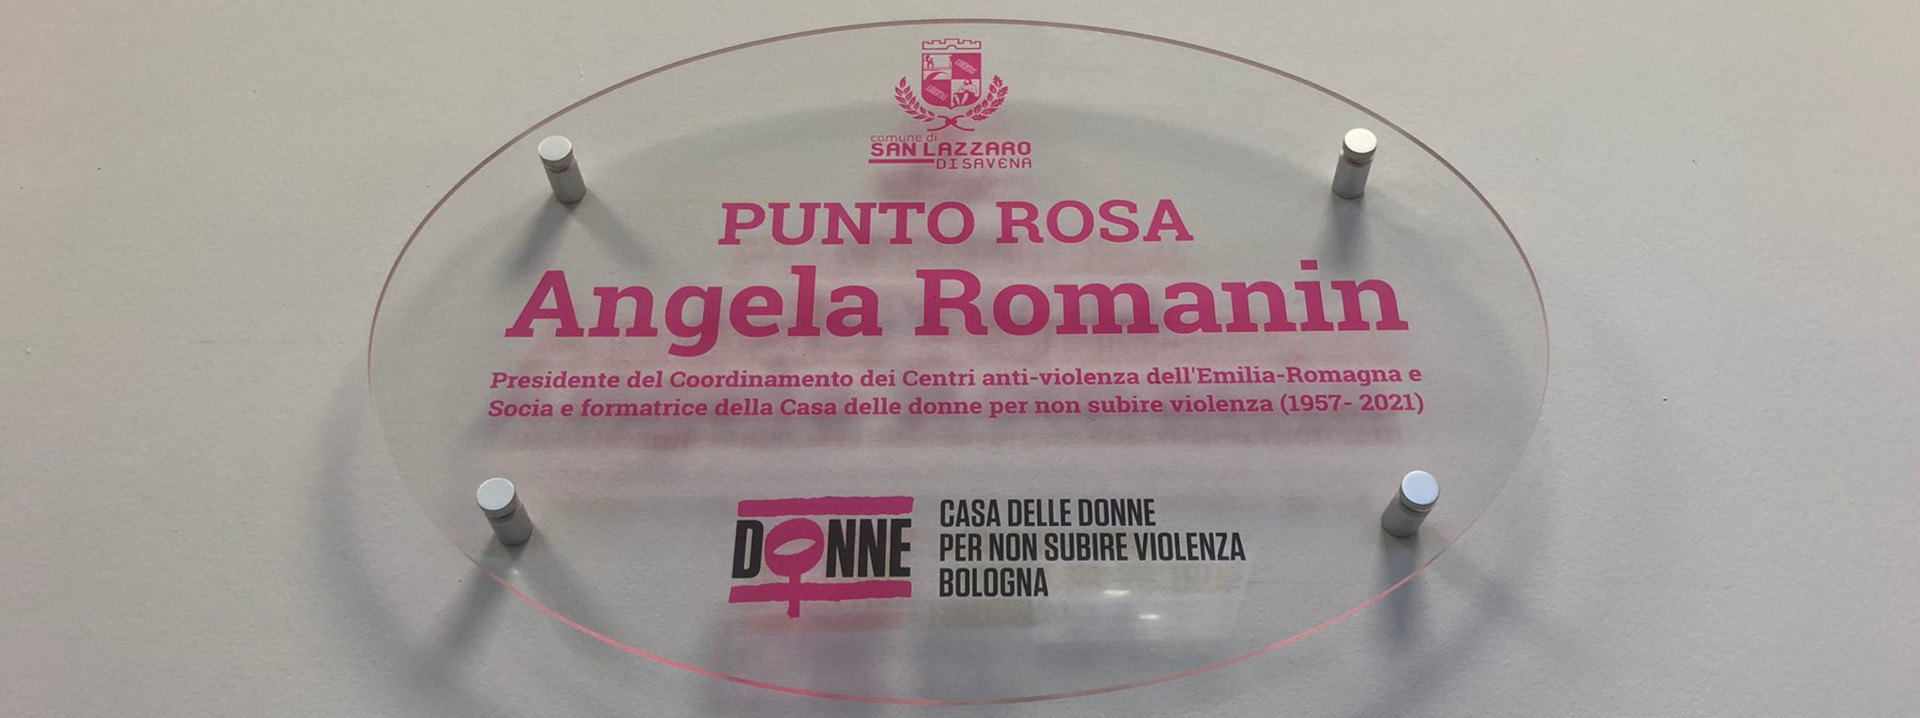 Intitolato ad Angela Romanin il Punto Rosa di San Lazzaro